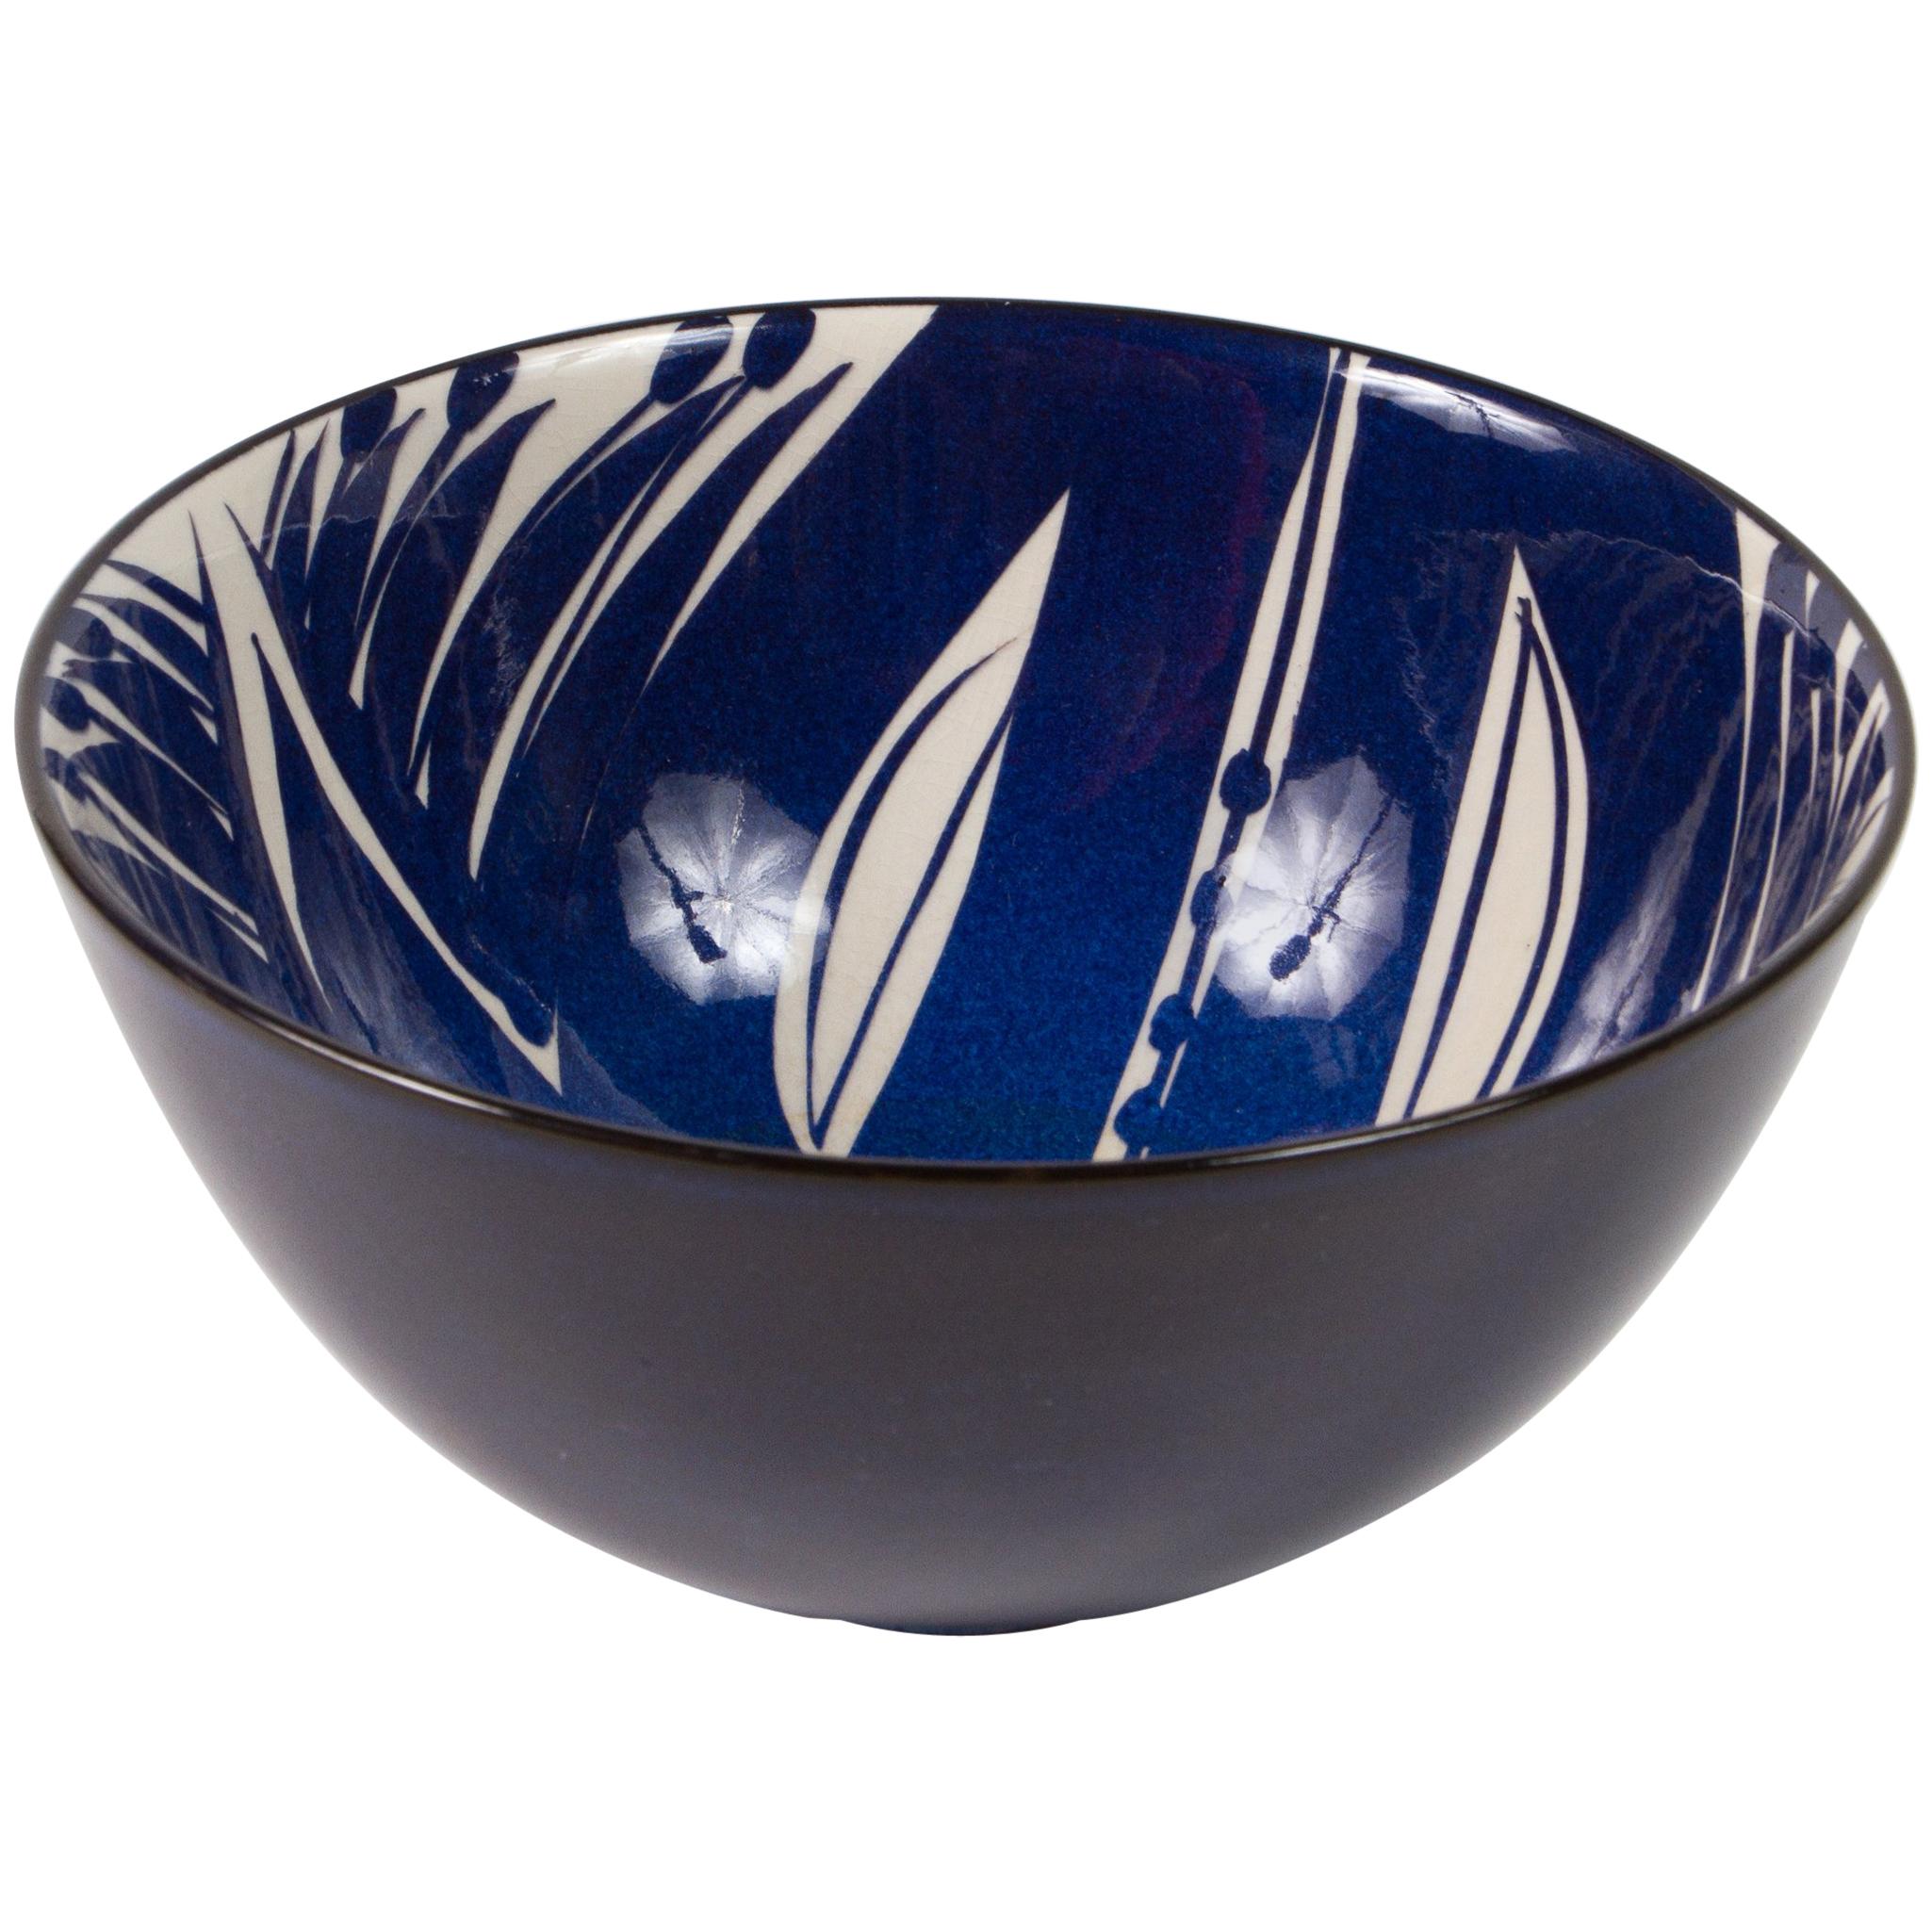 Nice Ceramic Glazed Bowl by Inge Lise Koefoed